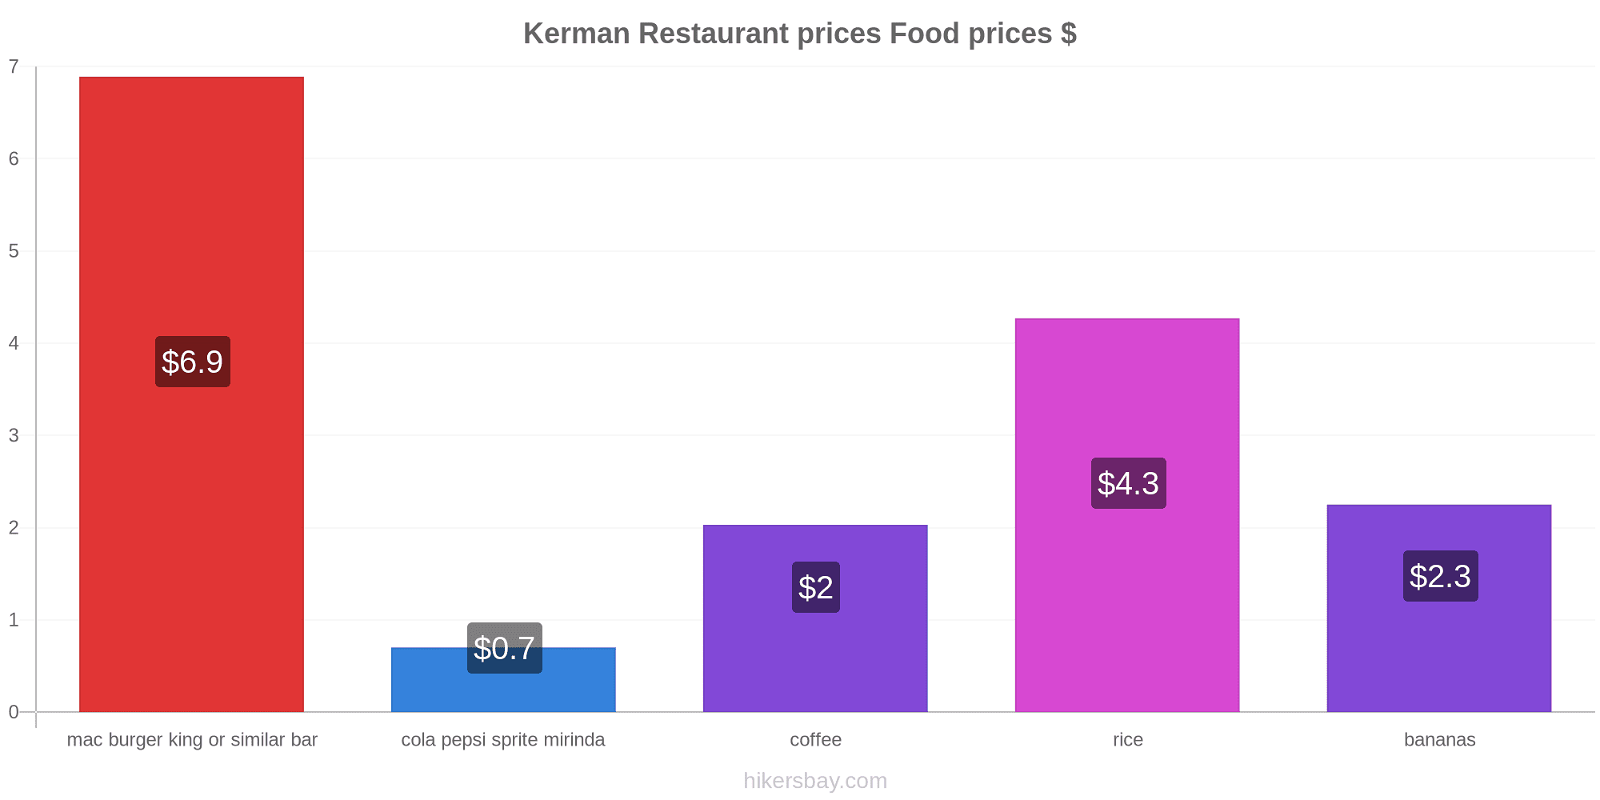 Kerman price changes hikersbay.com